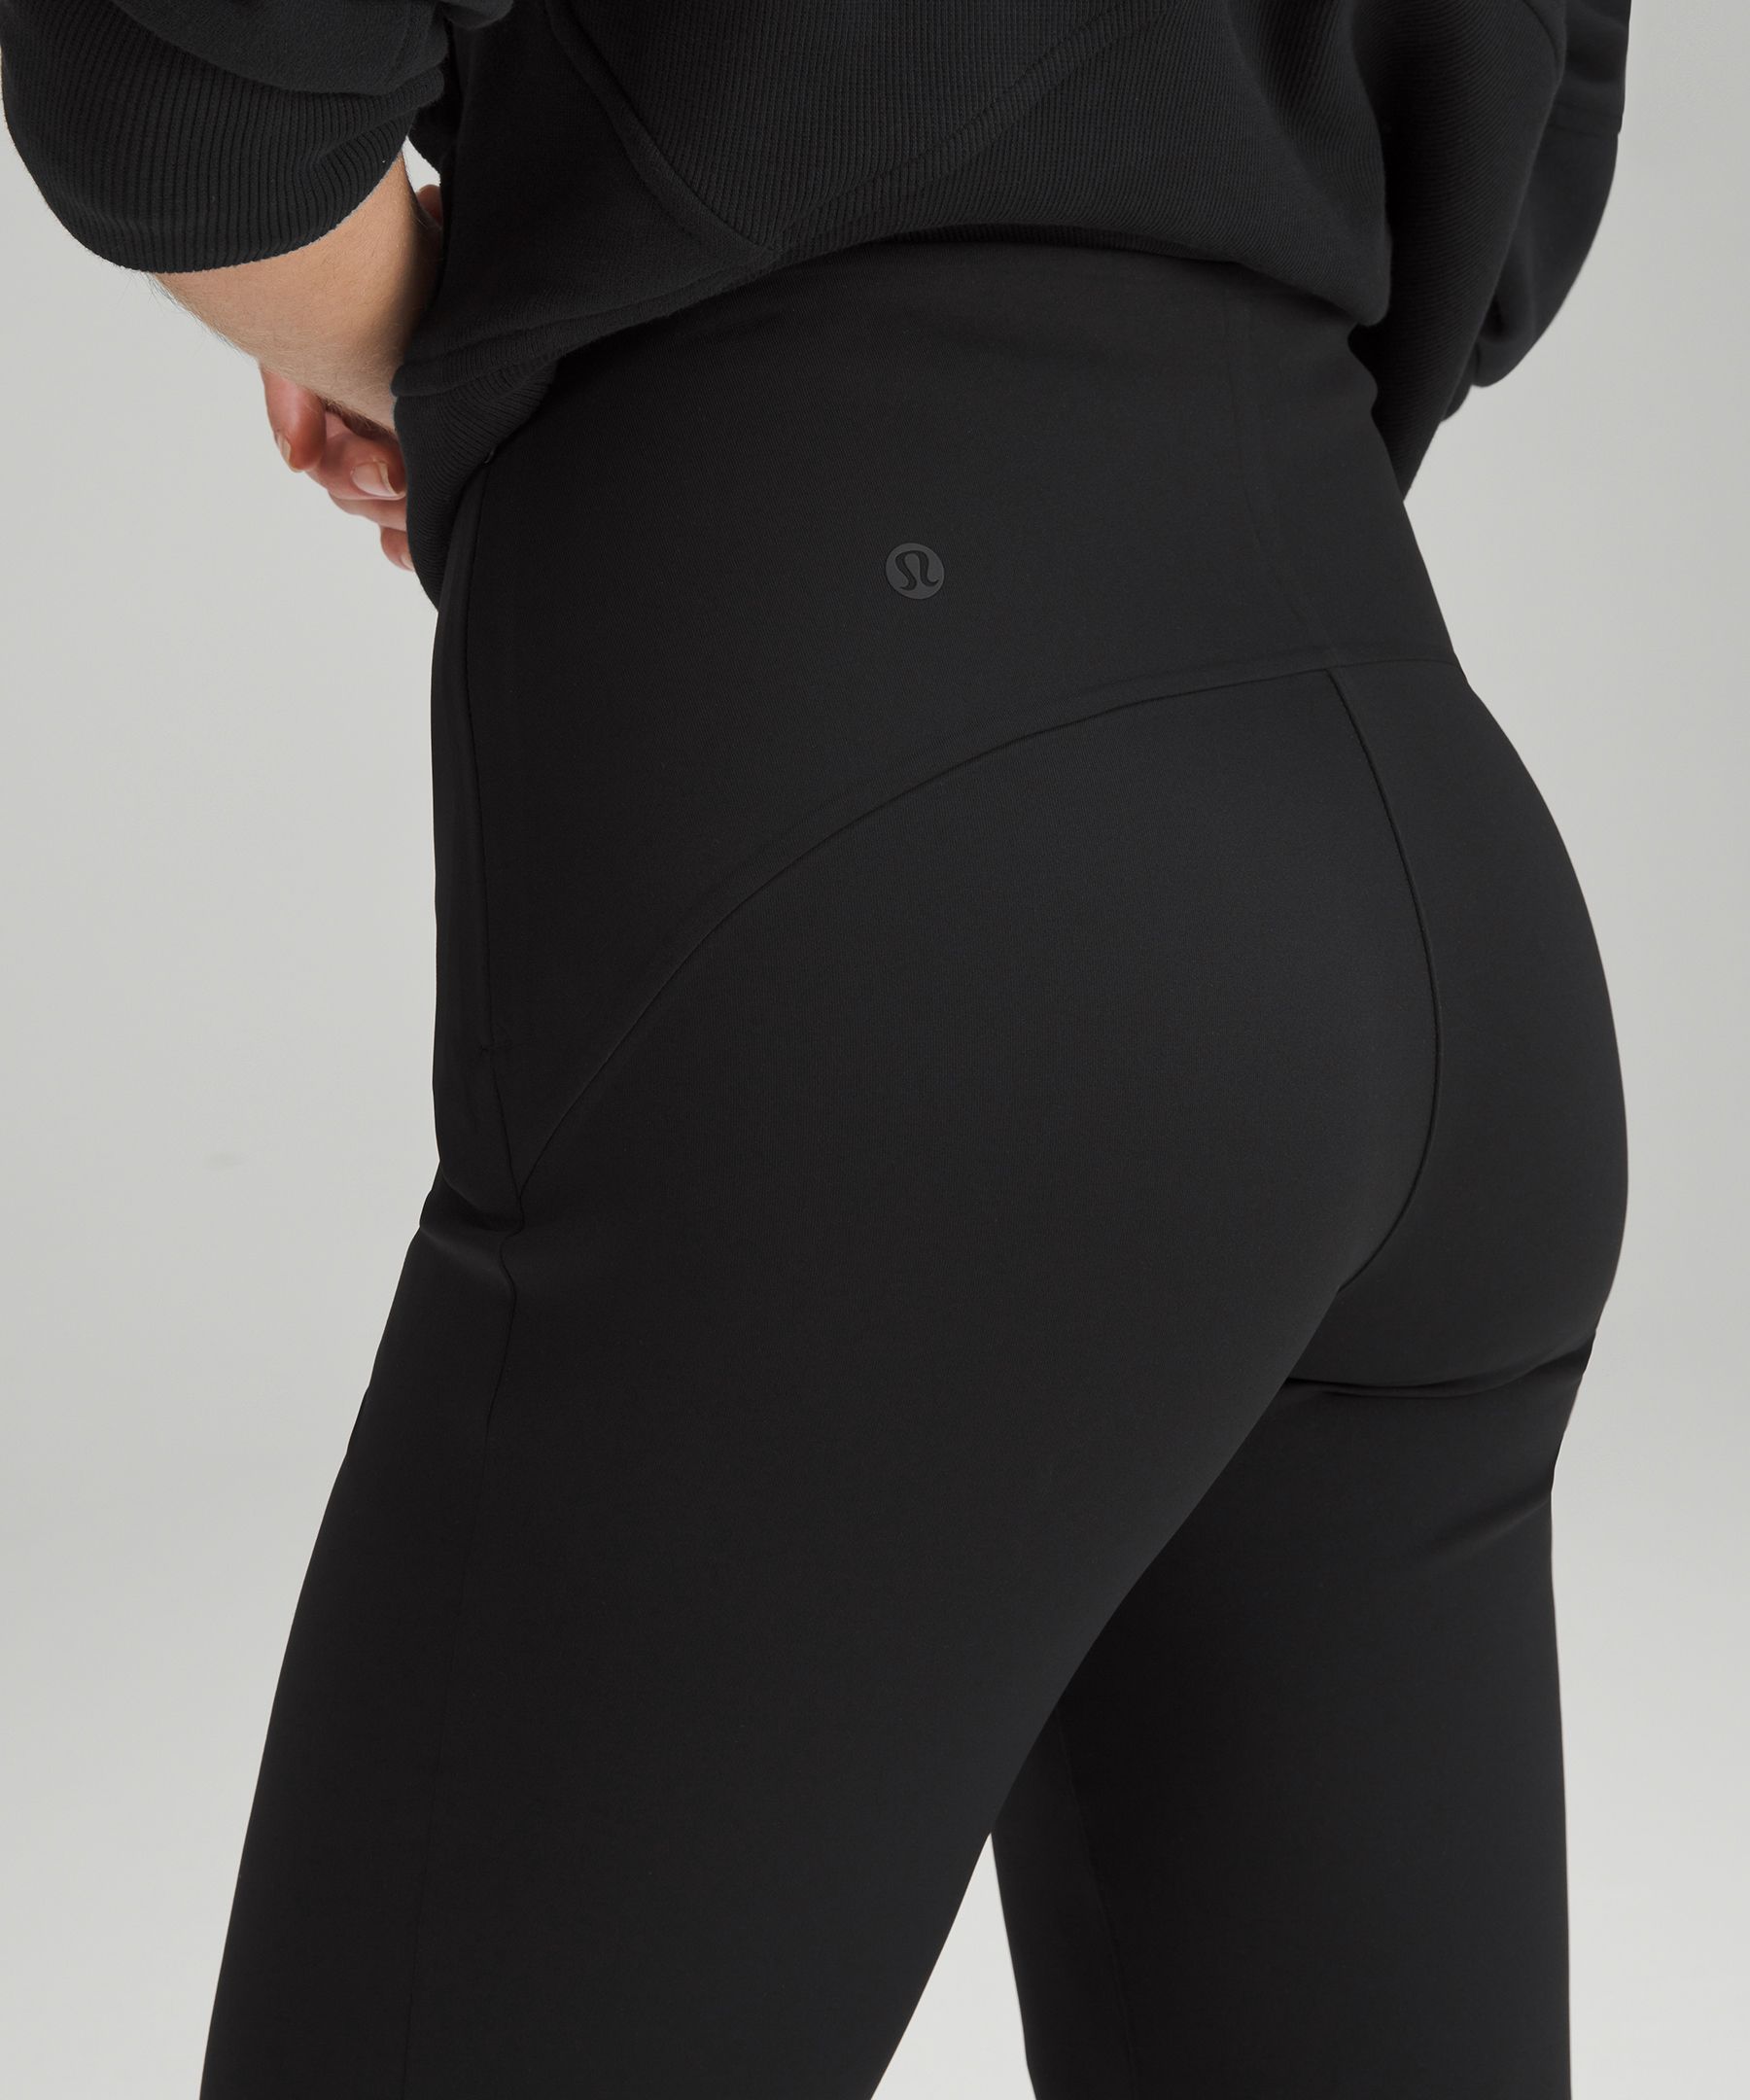 现货Lululemon Smooth Fit Pull-On High-Rise Cropped高腰休闲裤-Taobao